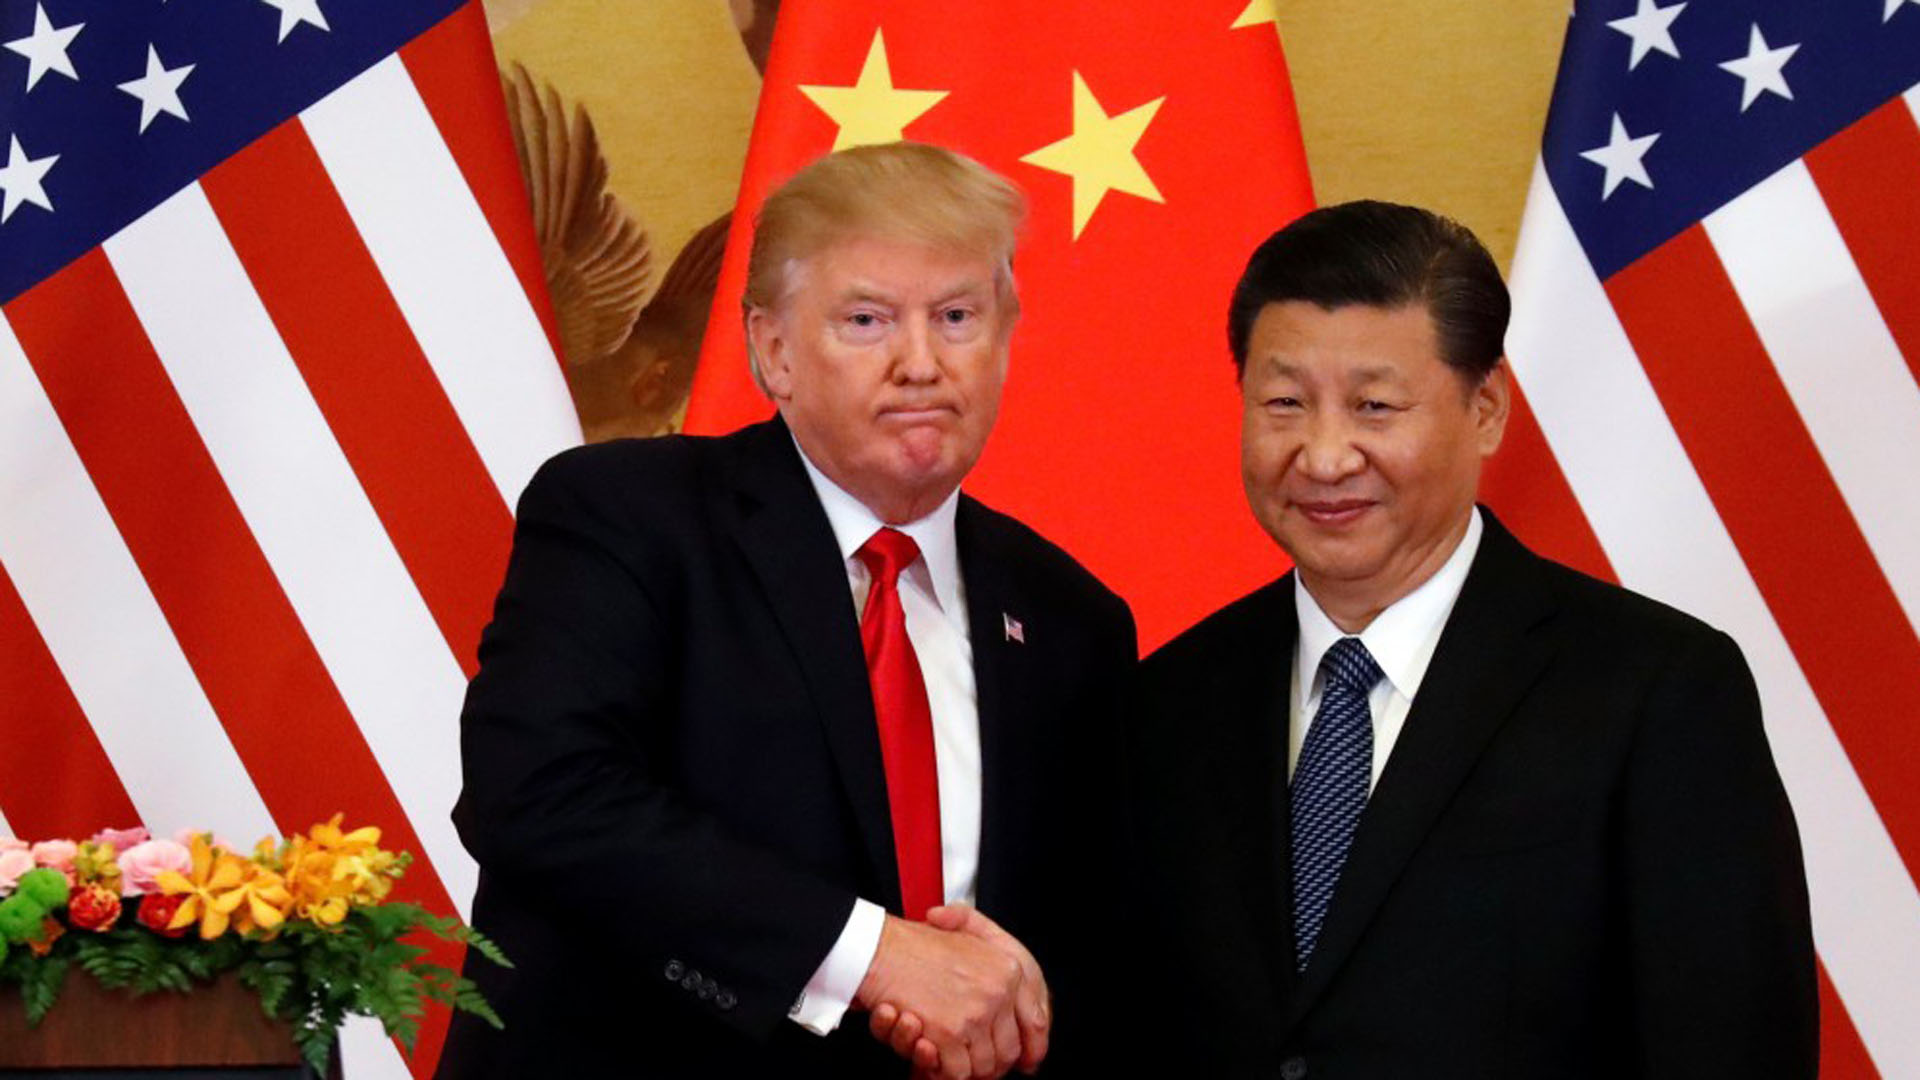 Según The Economist, la guerra comercial entre Estados Unidos y China podría traer consecuencias positivas inesperadas